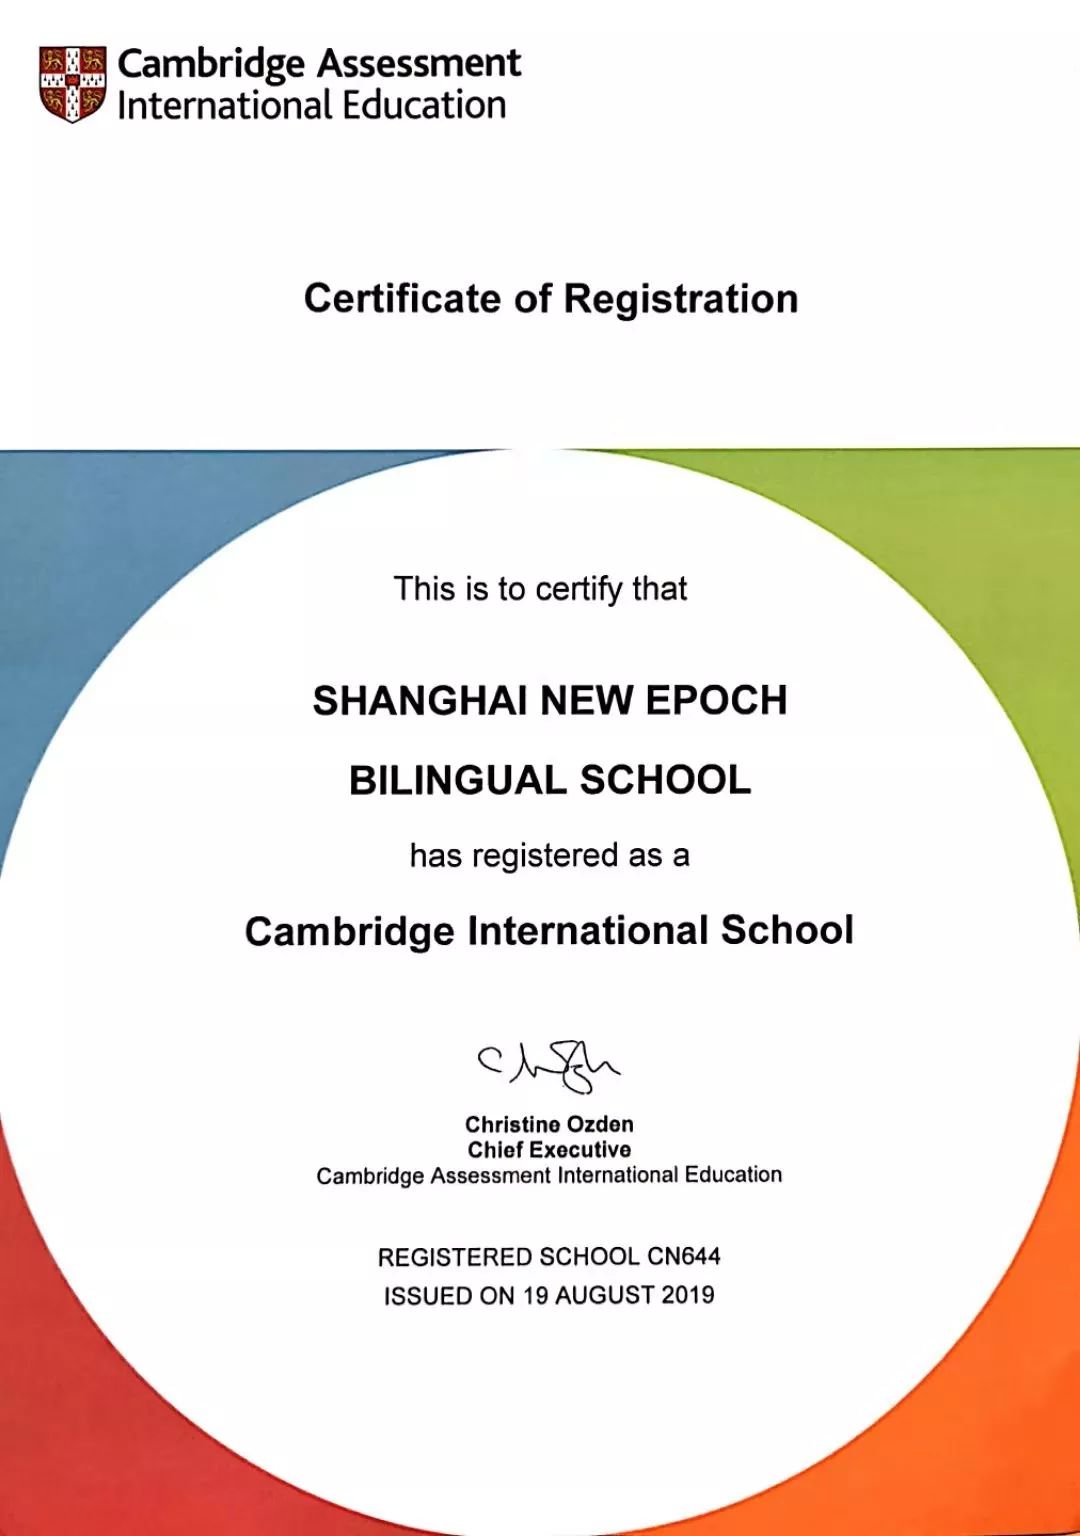 上海新纪元双语学校正式获得剑桥官方授权.jpg